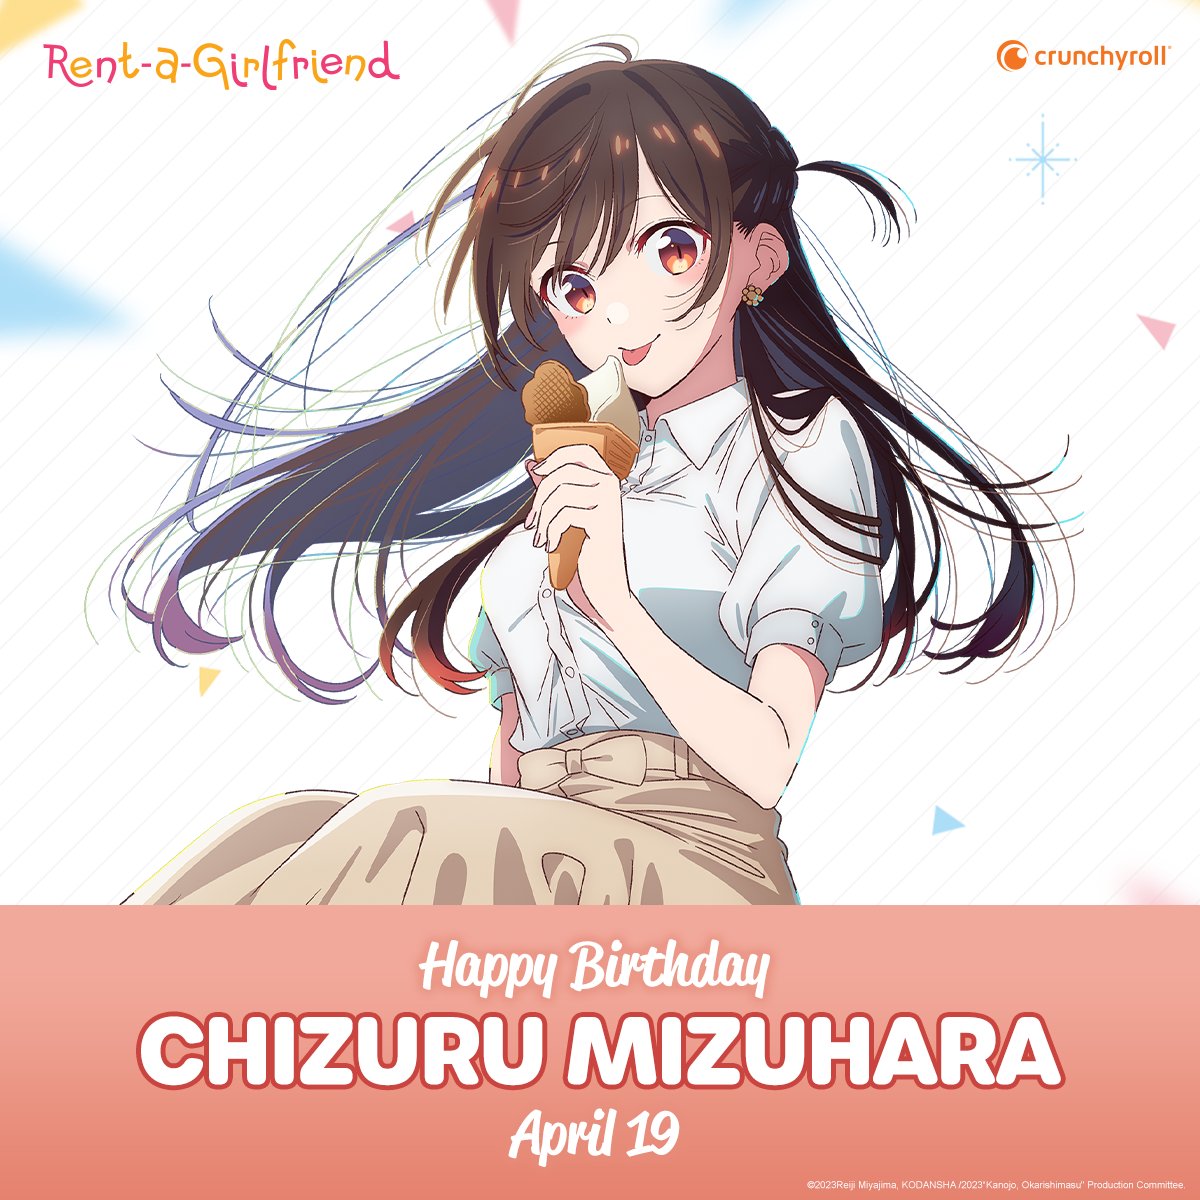 Happy Birthday to the ever-charming Chizuru Mizuhara! 🌟